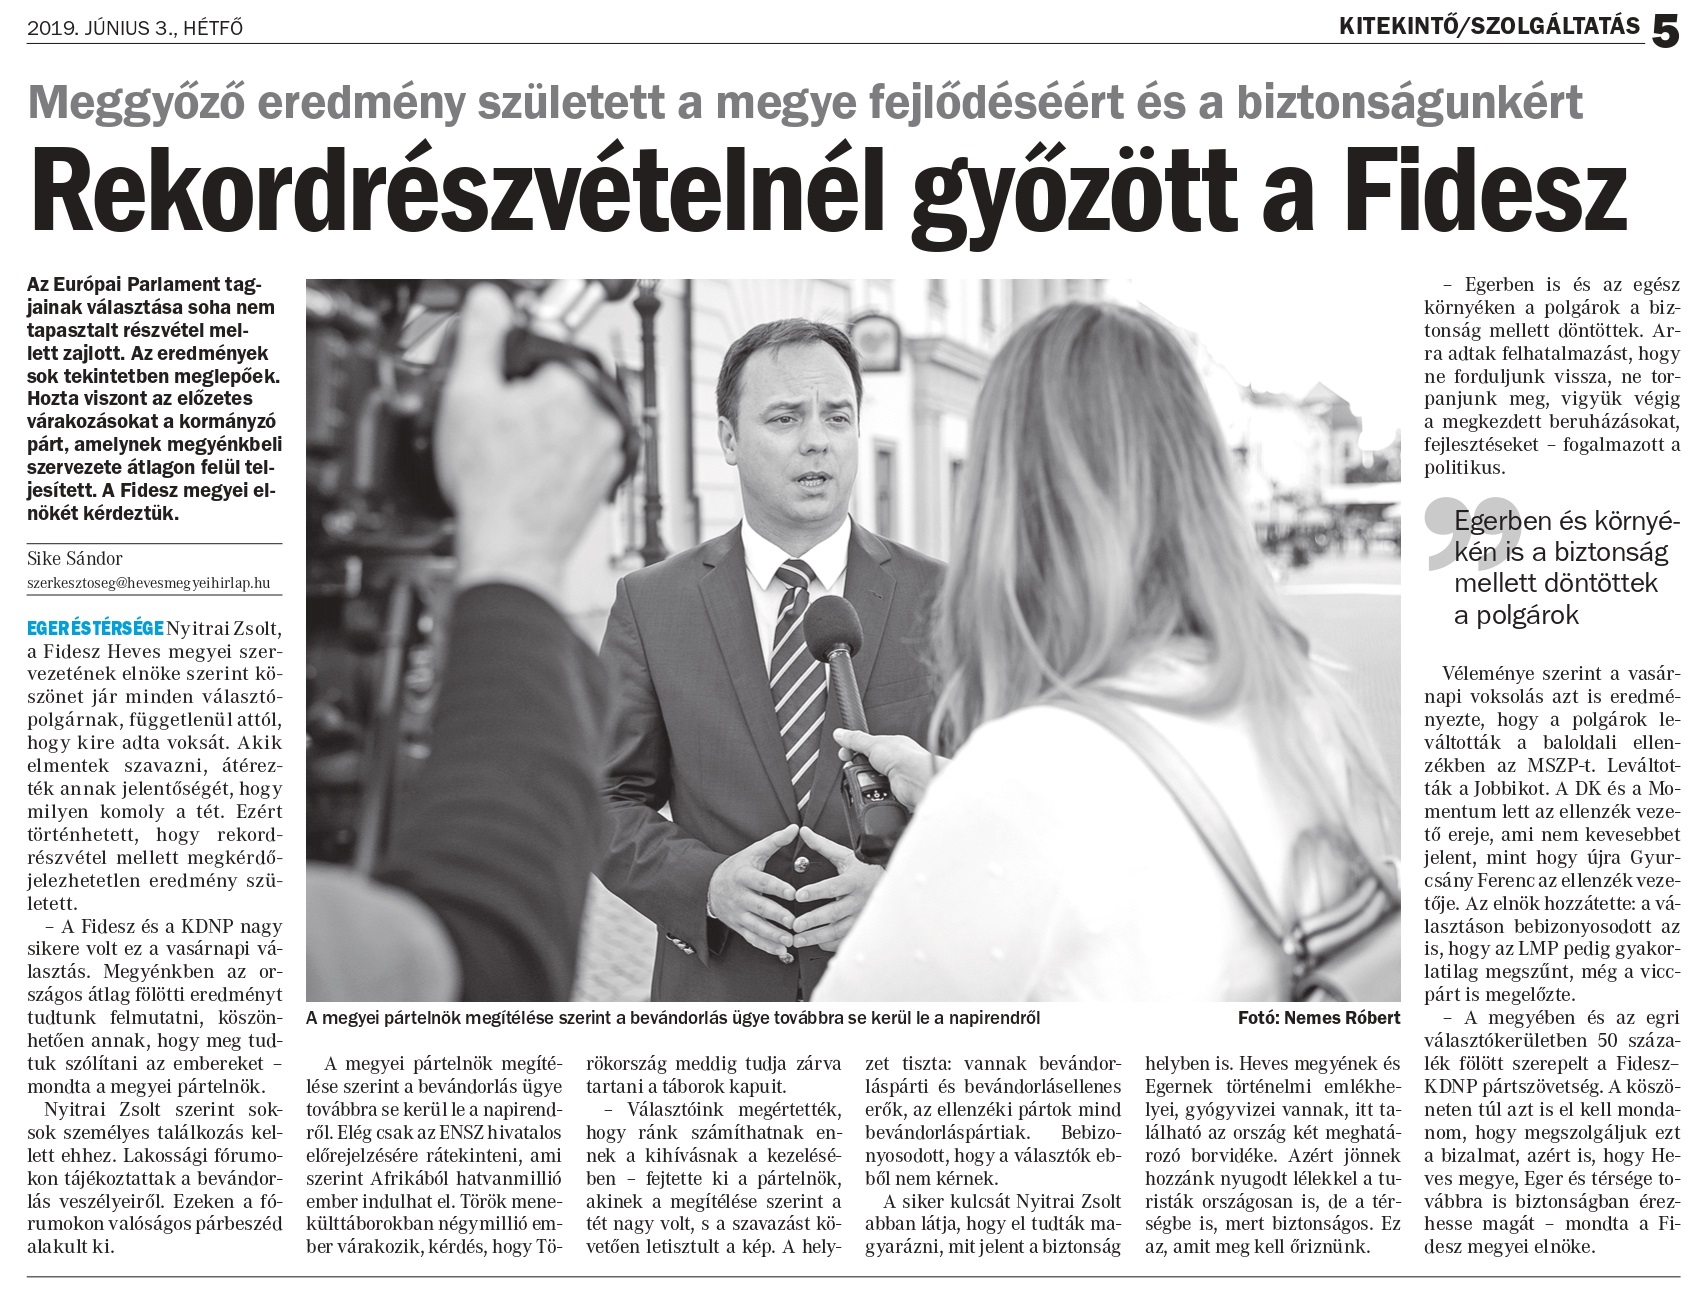 Rekordrészvételnél győzött a Fidesz